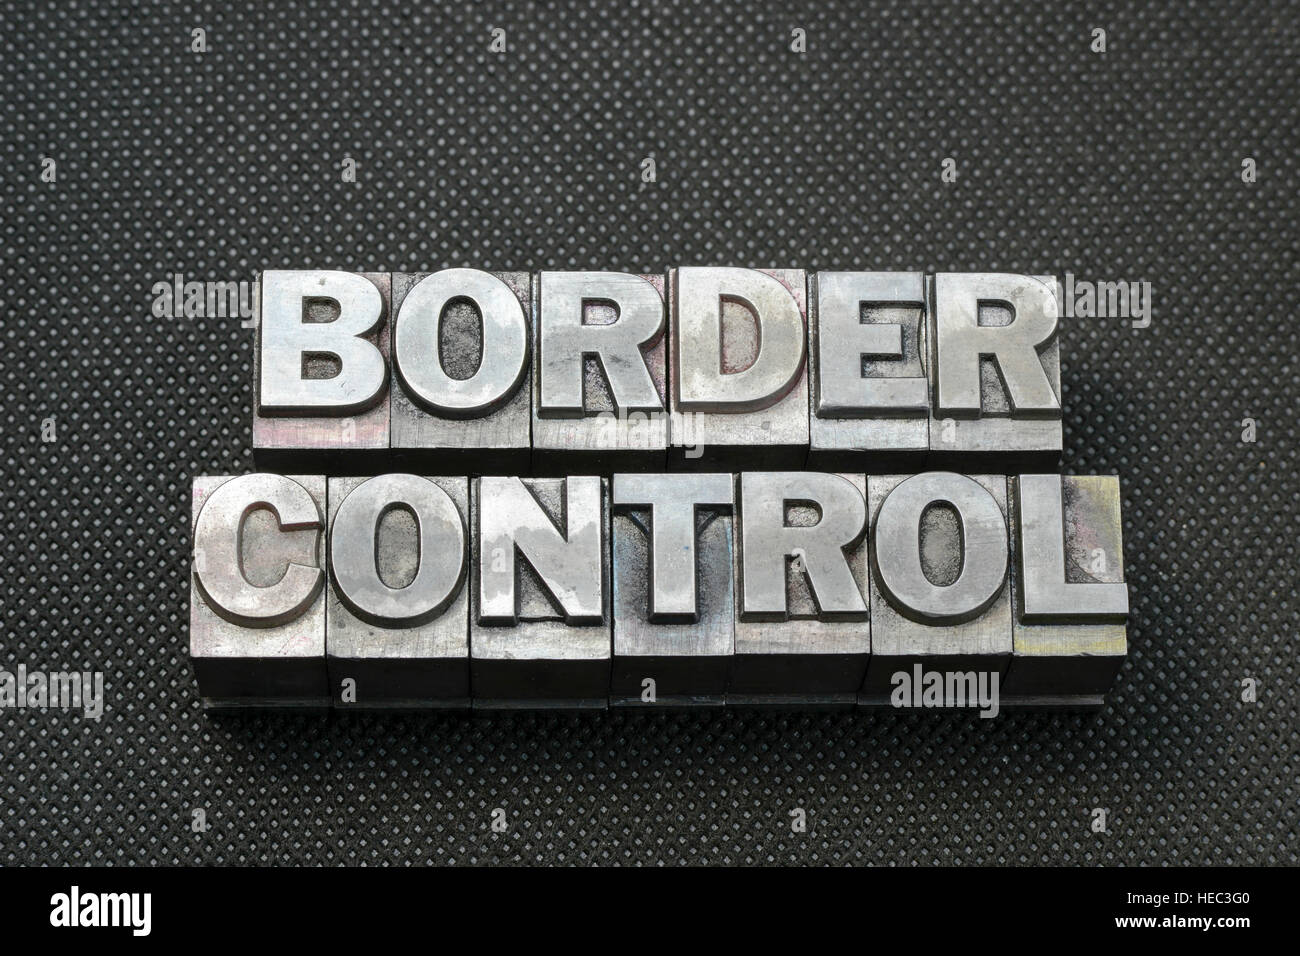 El control fronterizo frase hecha de bloques en tipografía metálica negra superficie perforada Foto de stock